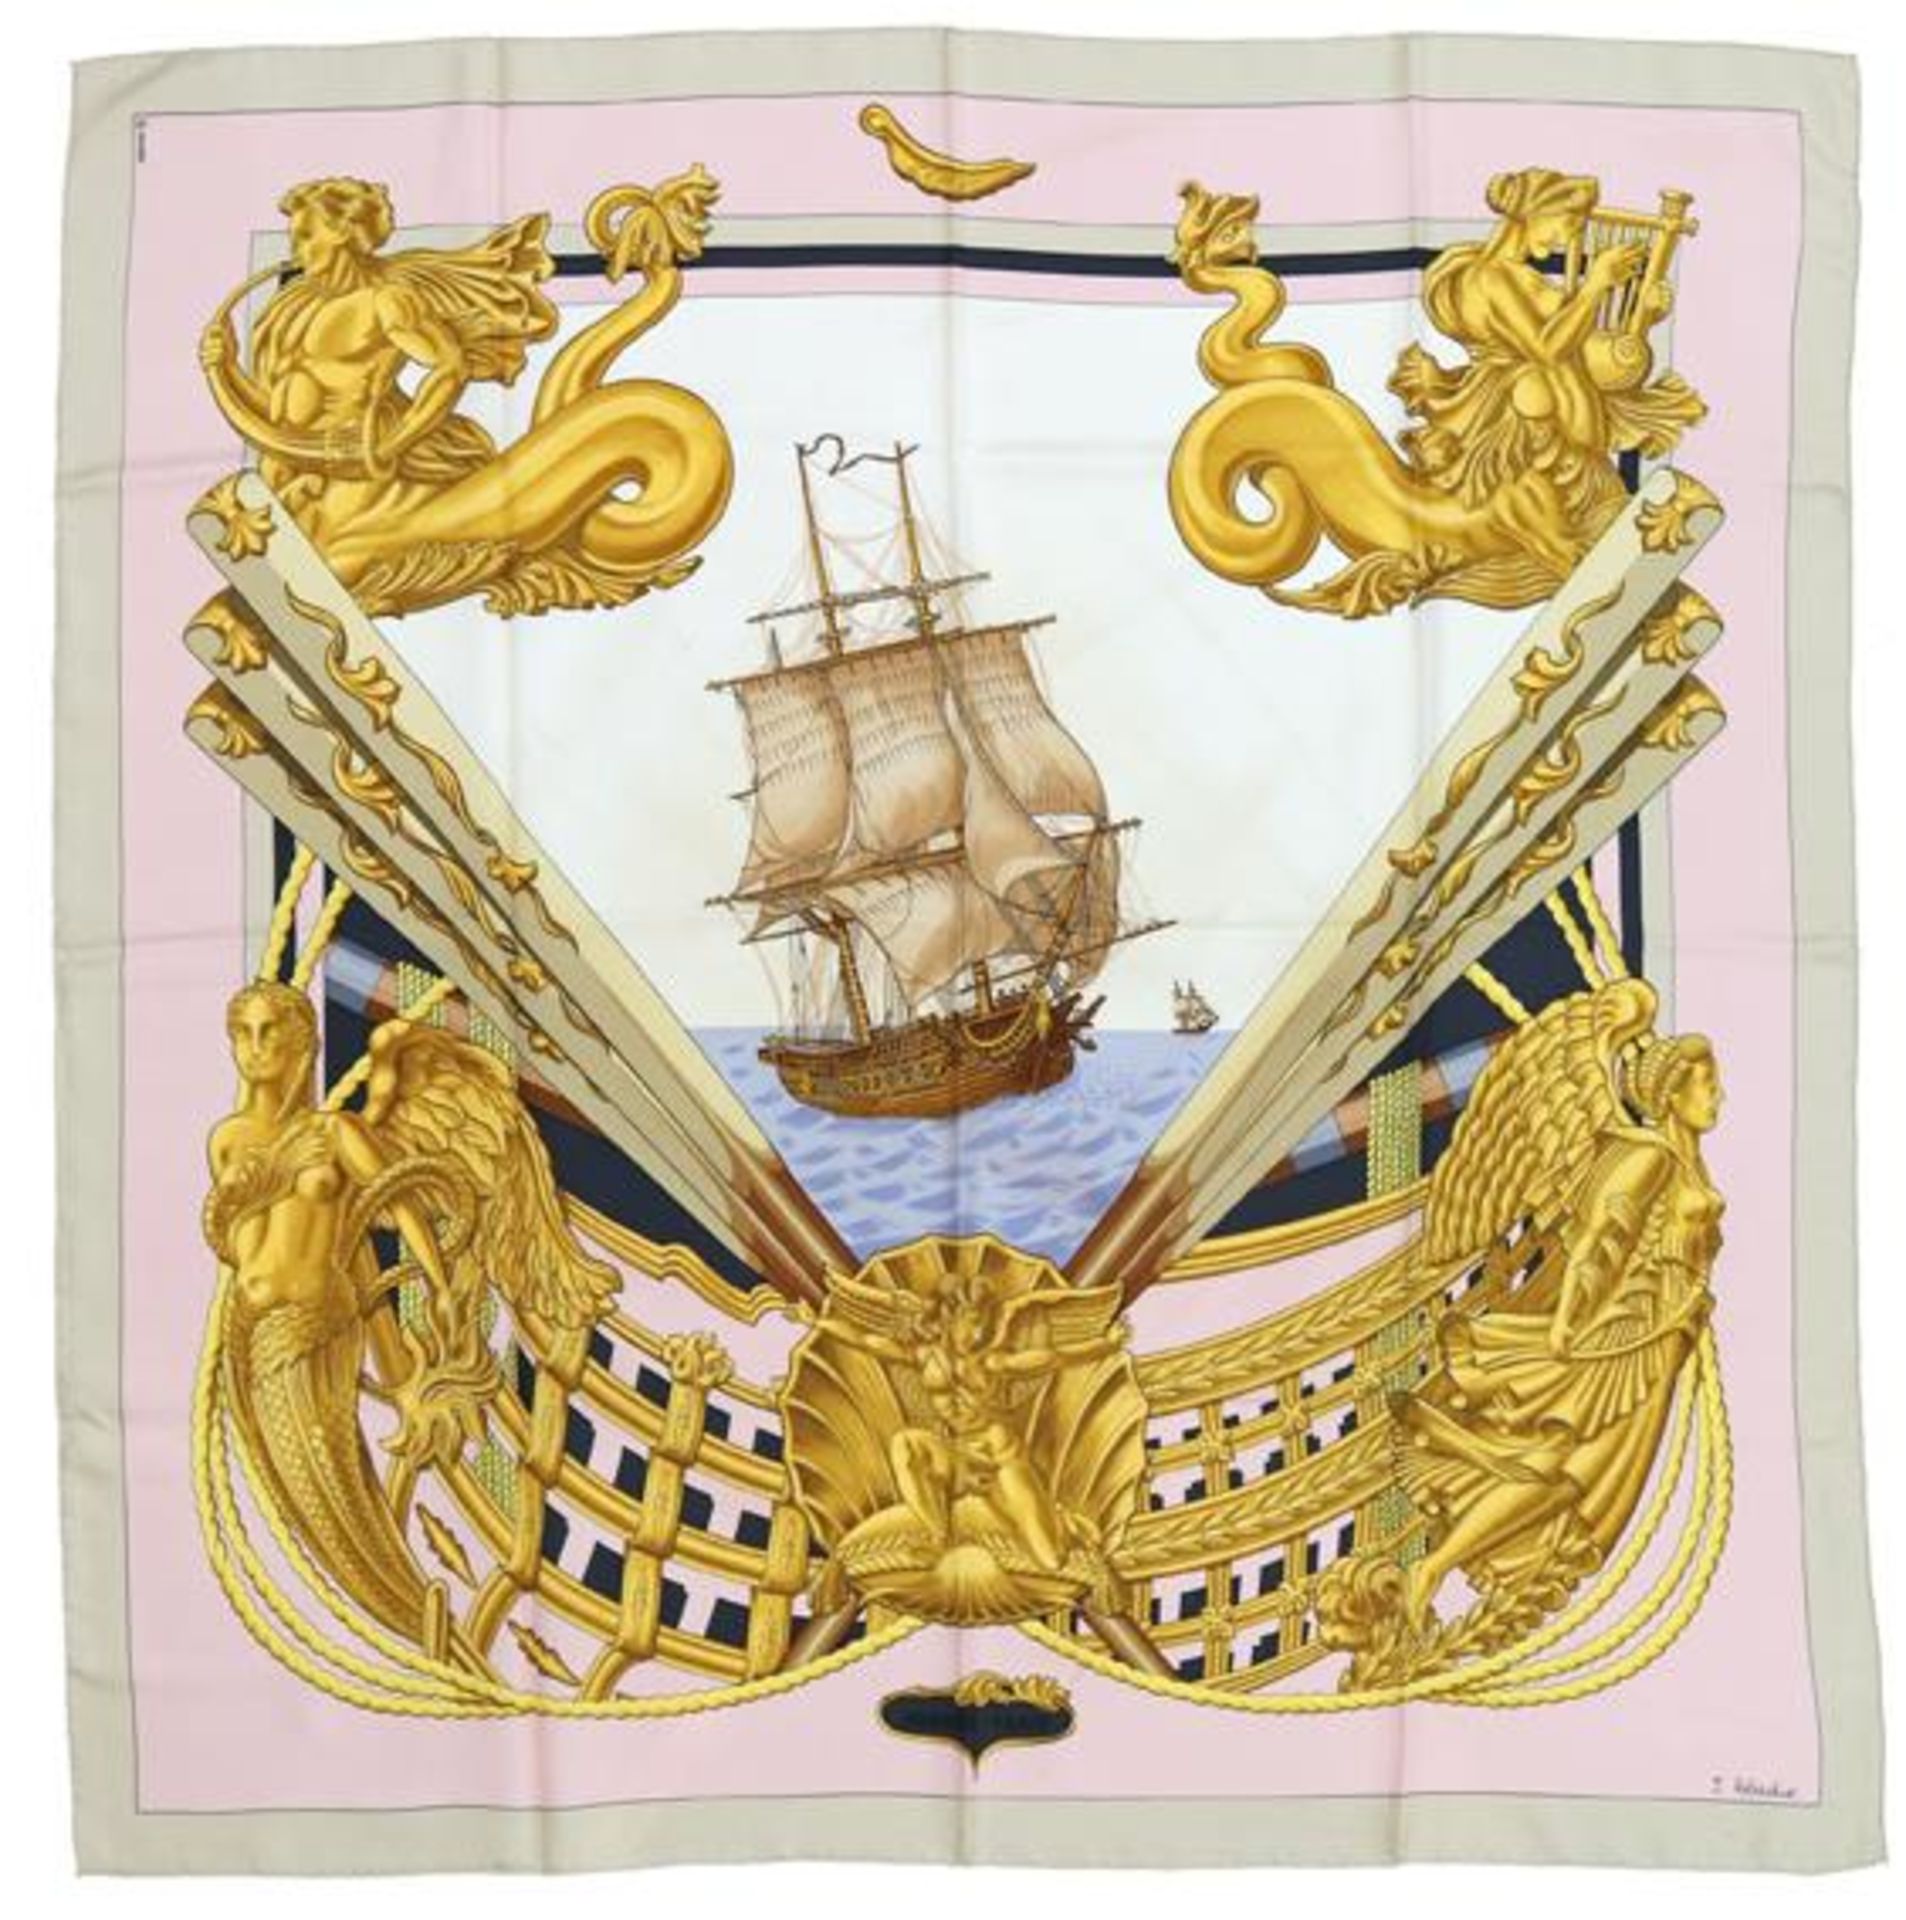 Hermès-Carré'Zéphir', von Julia Abadie, 1992. Mittig historisches Segelschiff auf hoher See, umrahmt